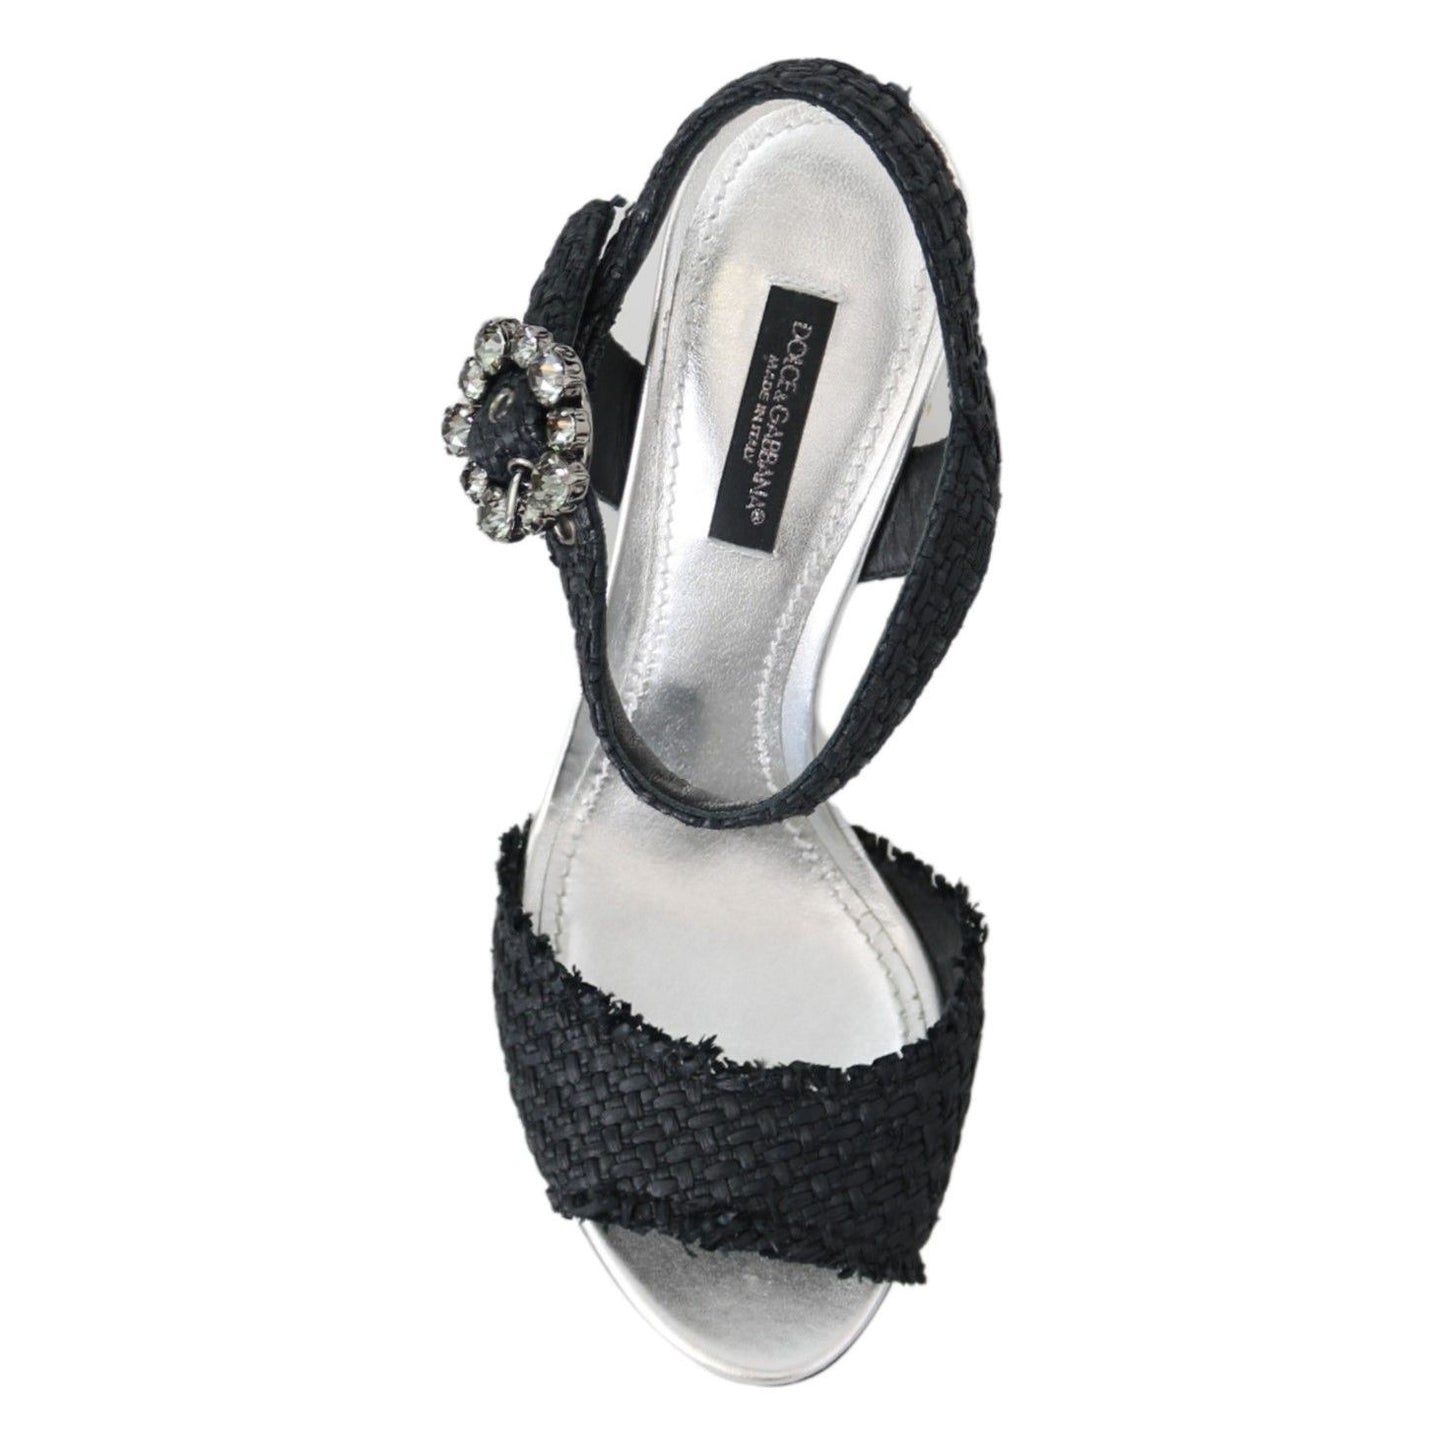 Dolce & Gabbana Elegant Black Ankle Strap Sandals with LED Lights black-crystals-led-lights-sandals-shoes